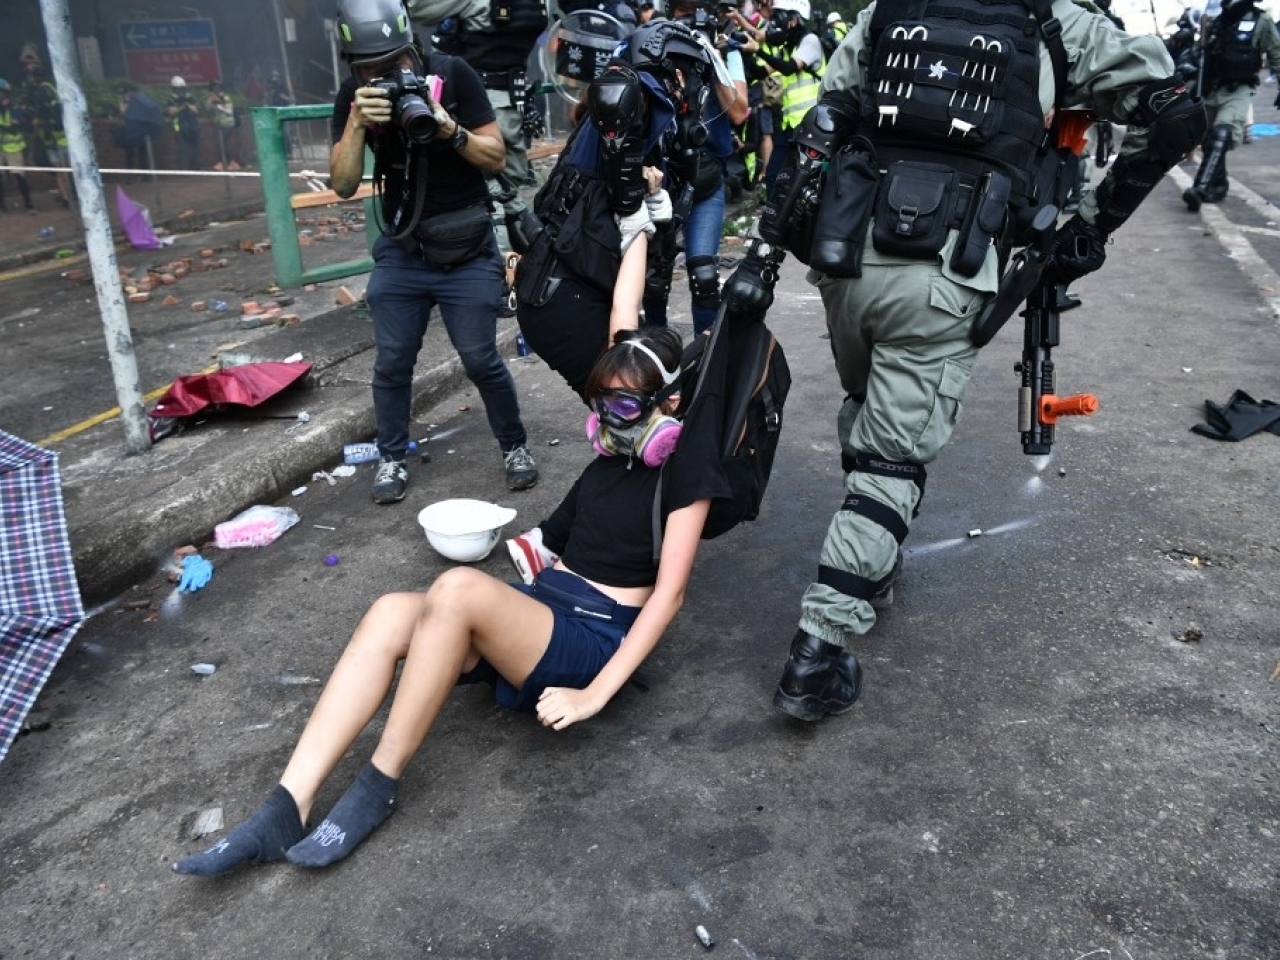 Протести у Гонконзі: поліція оточила Політехнічний університет, тривають сутички / Фото: AFP